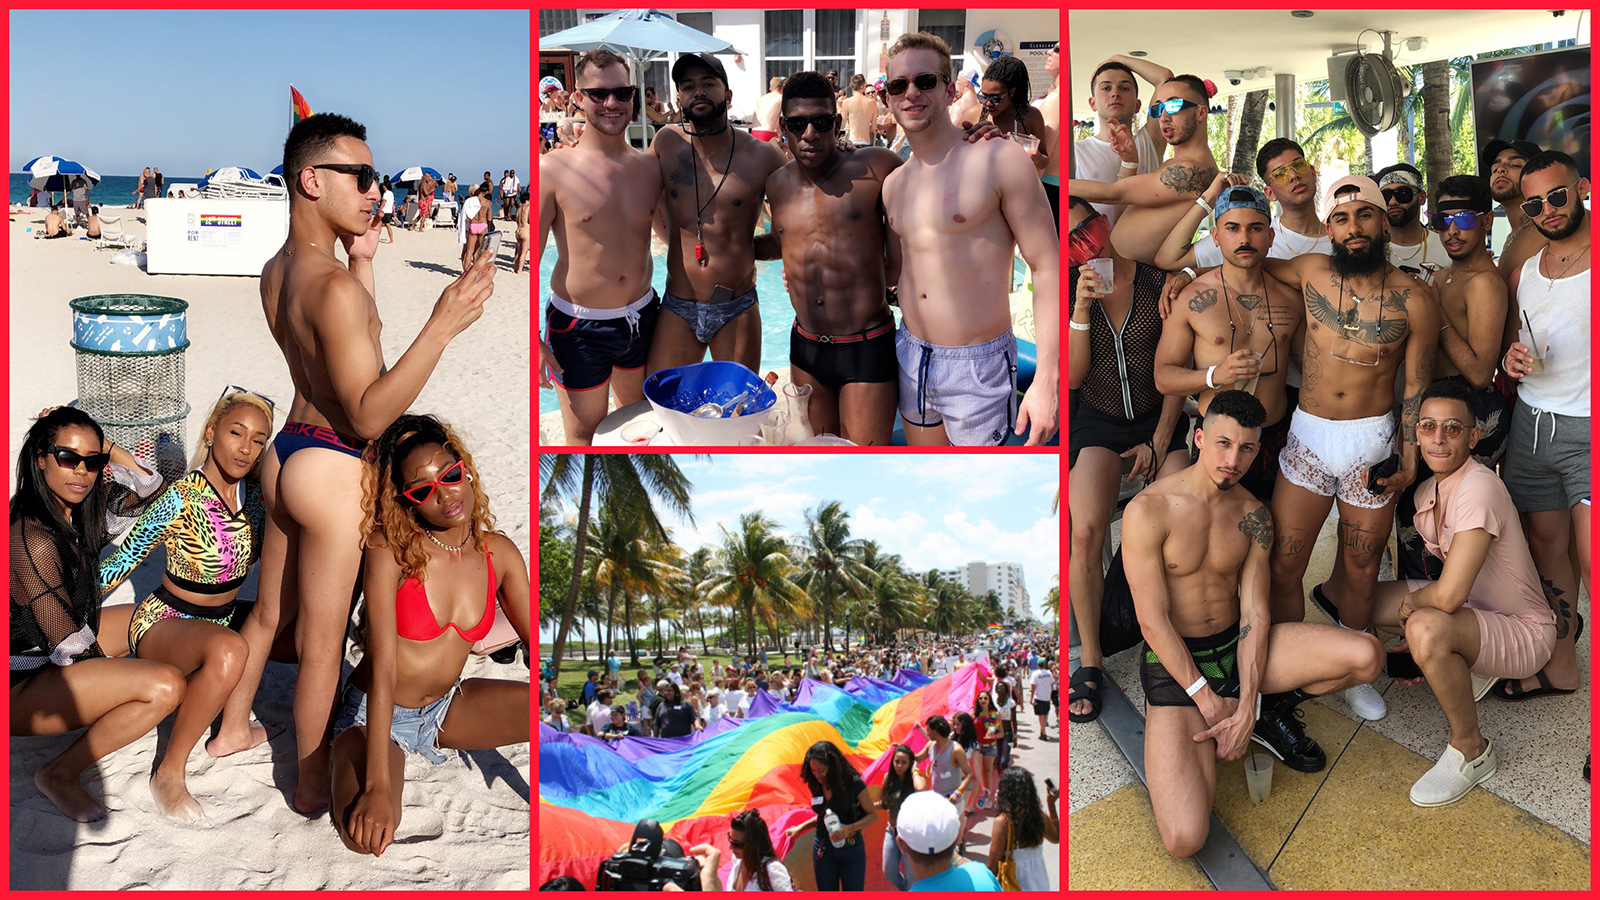 Bisexual nude beach pics Miami Pride Guide 2019 Tenz Magazine